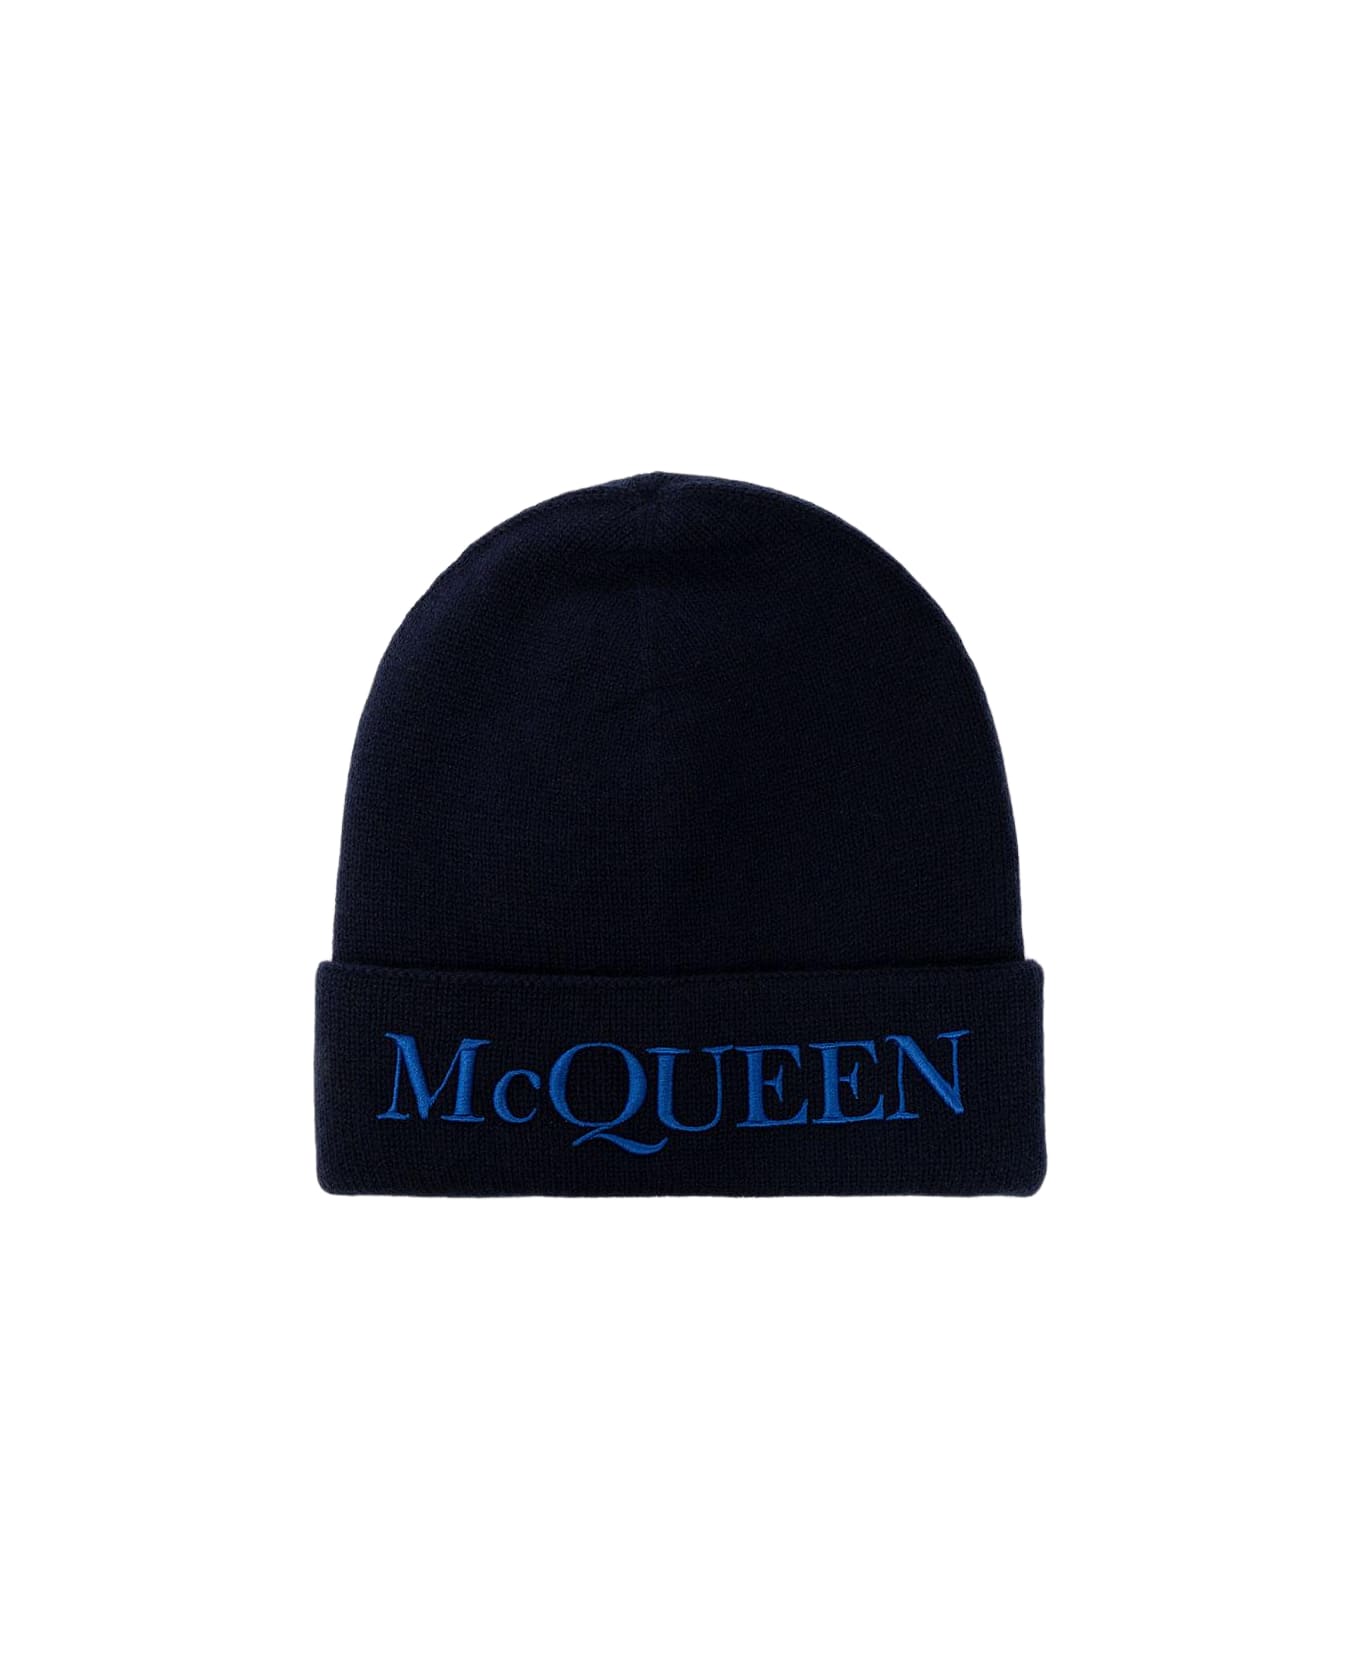 Alexander McQueen Cashmere Beanie With Logo - NAVY 帽子